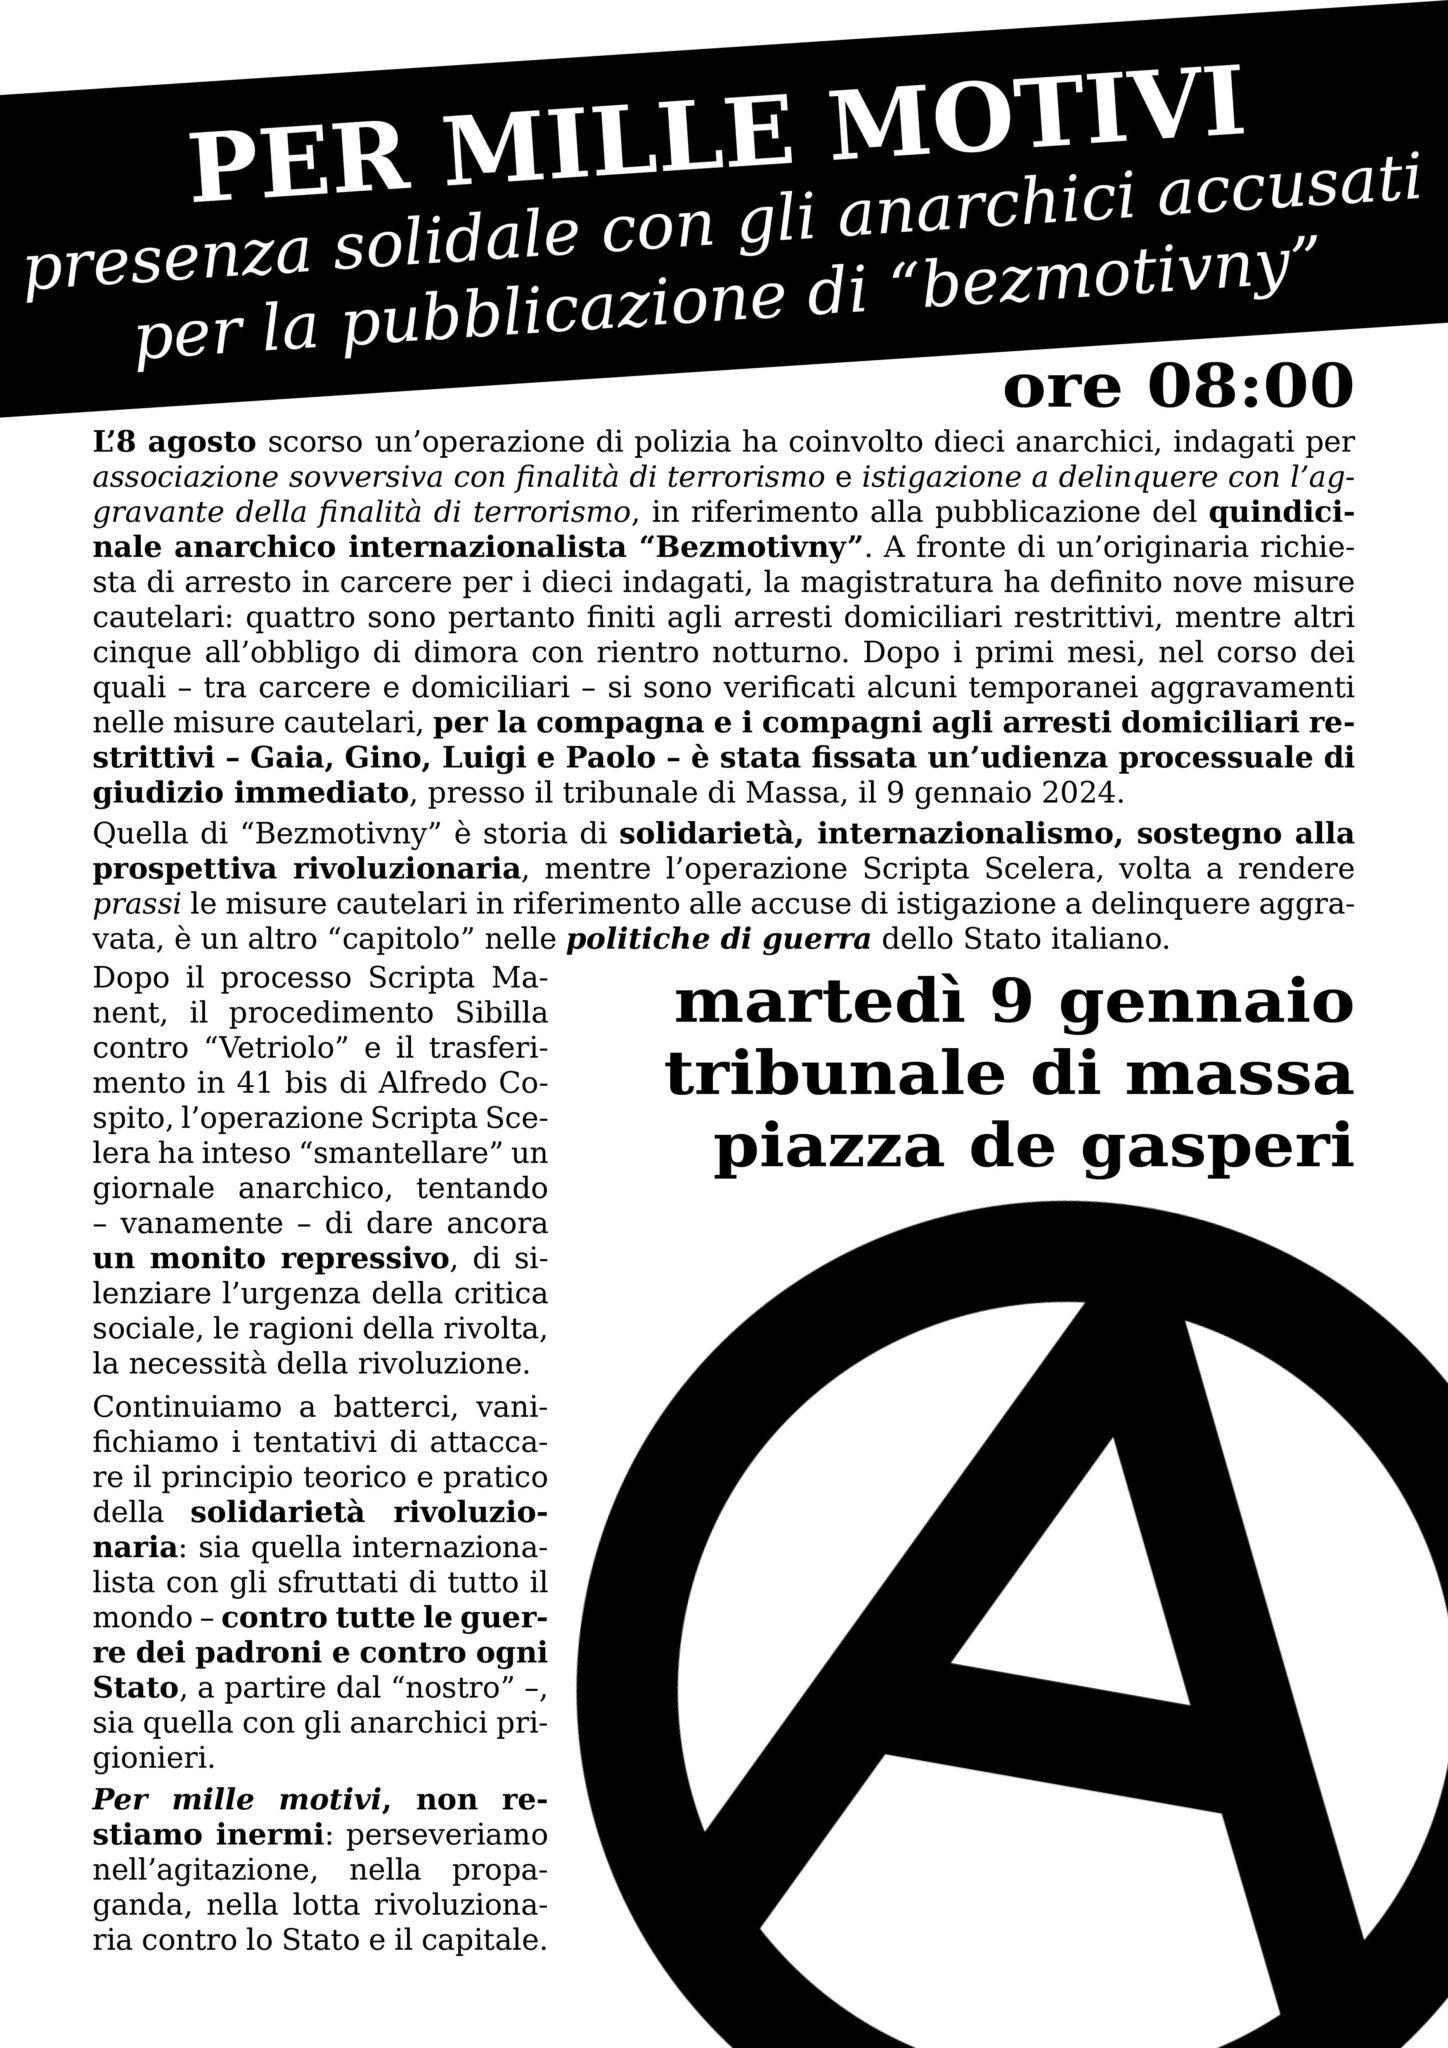 Declaración sobre el inicio del proceso con juicio inmediato contra cuatro anarquistas investigados en la op. Scripta Scelera